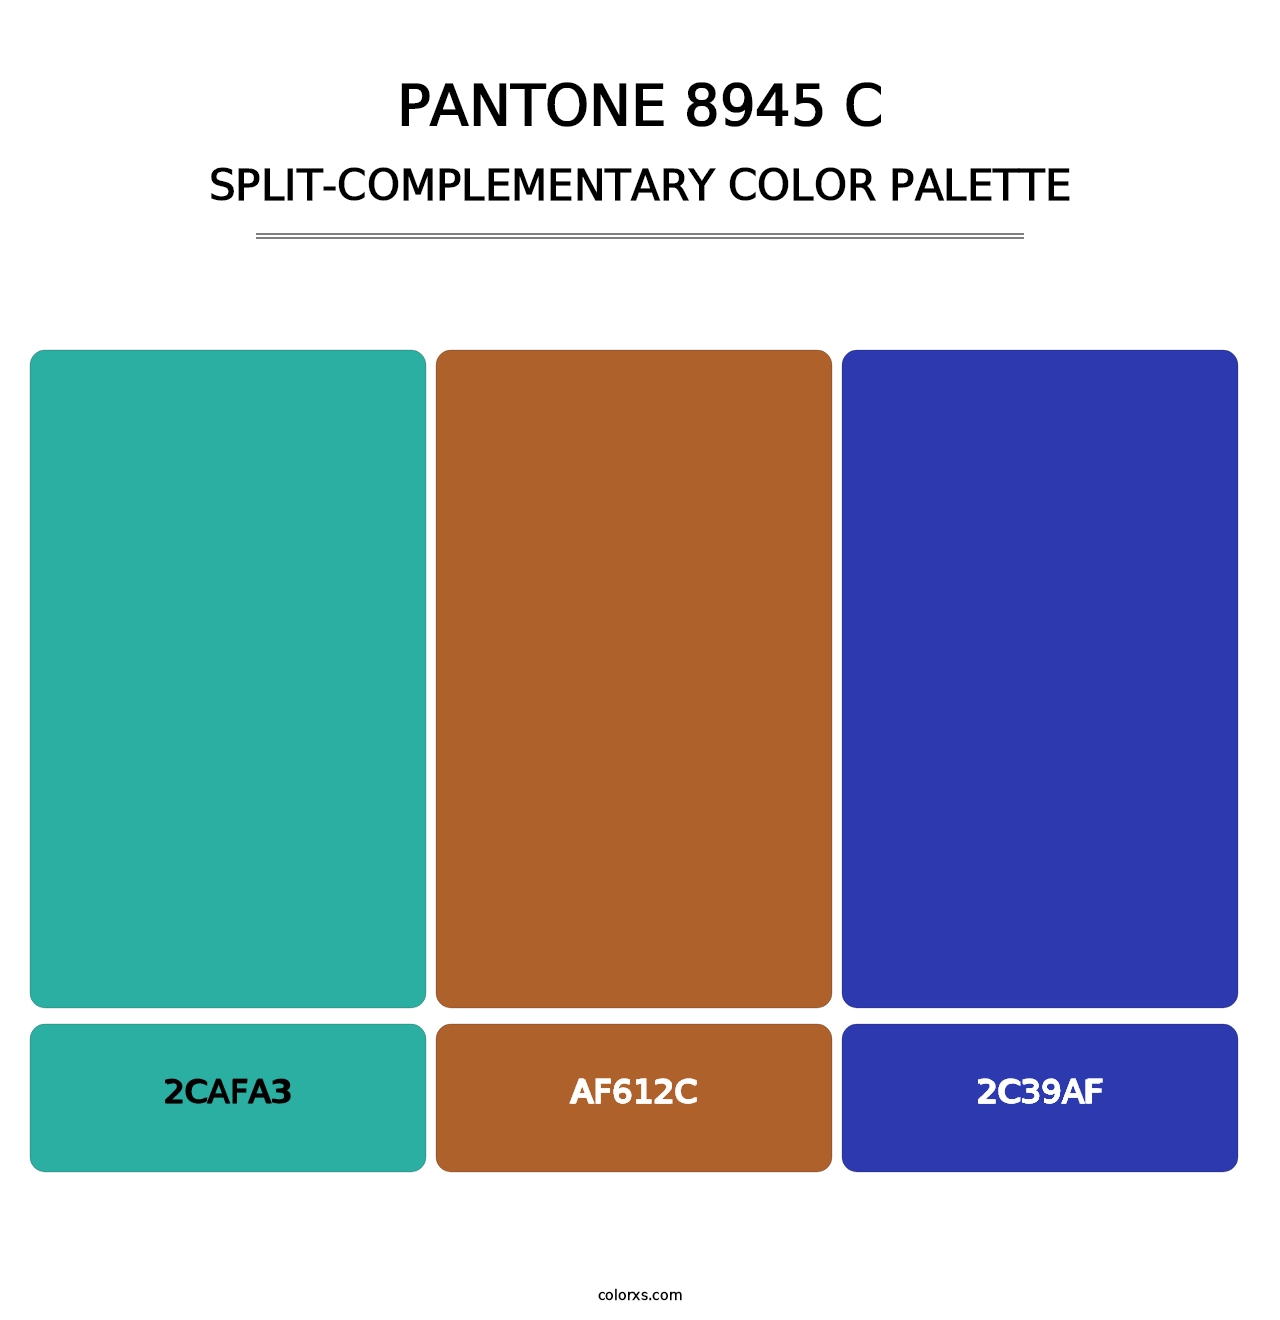 PANTONE 8945 C - Split-Complementary Color Palette